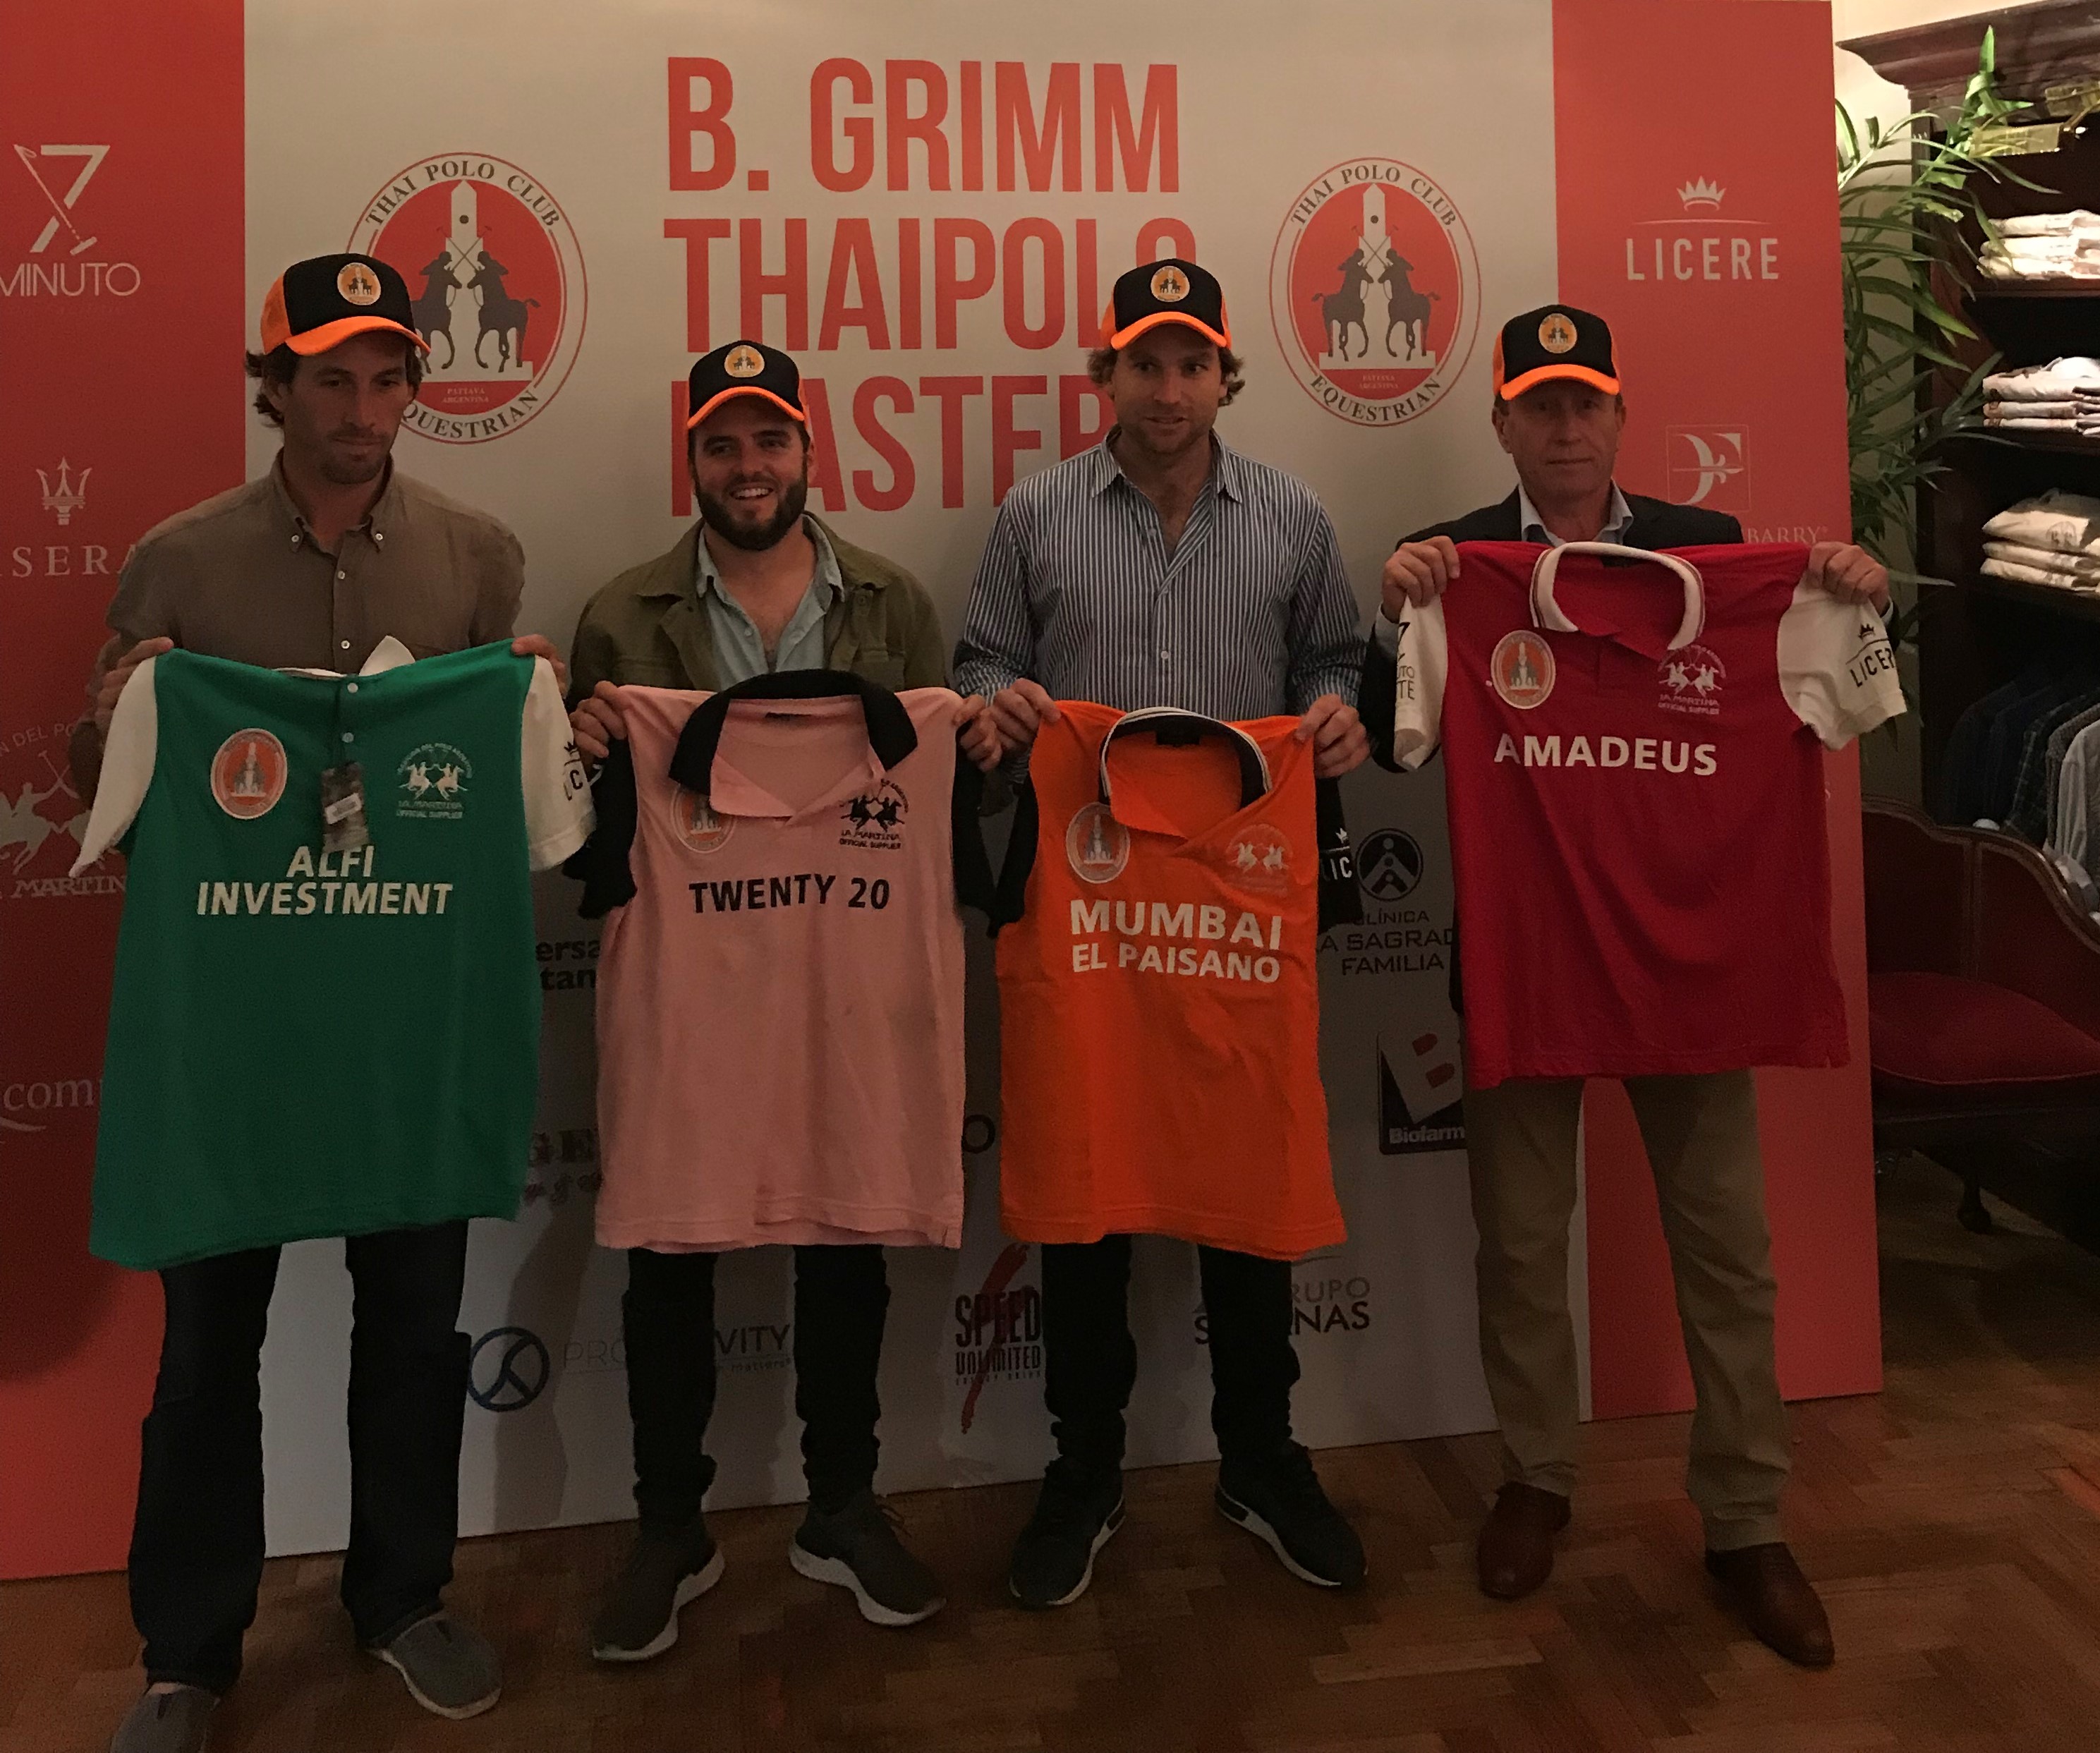 Se presentó en sociedad el nuevo torneo “B.Grimm Thai Polo Master”